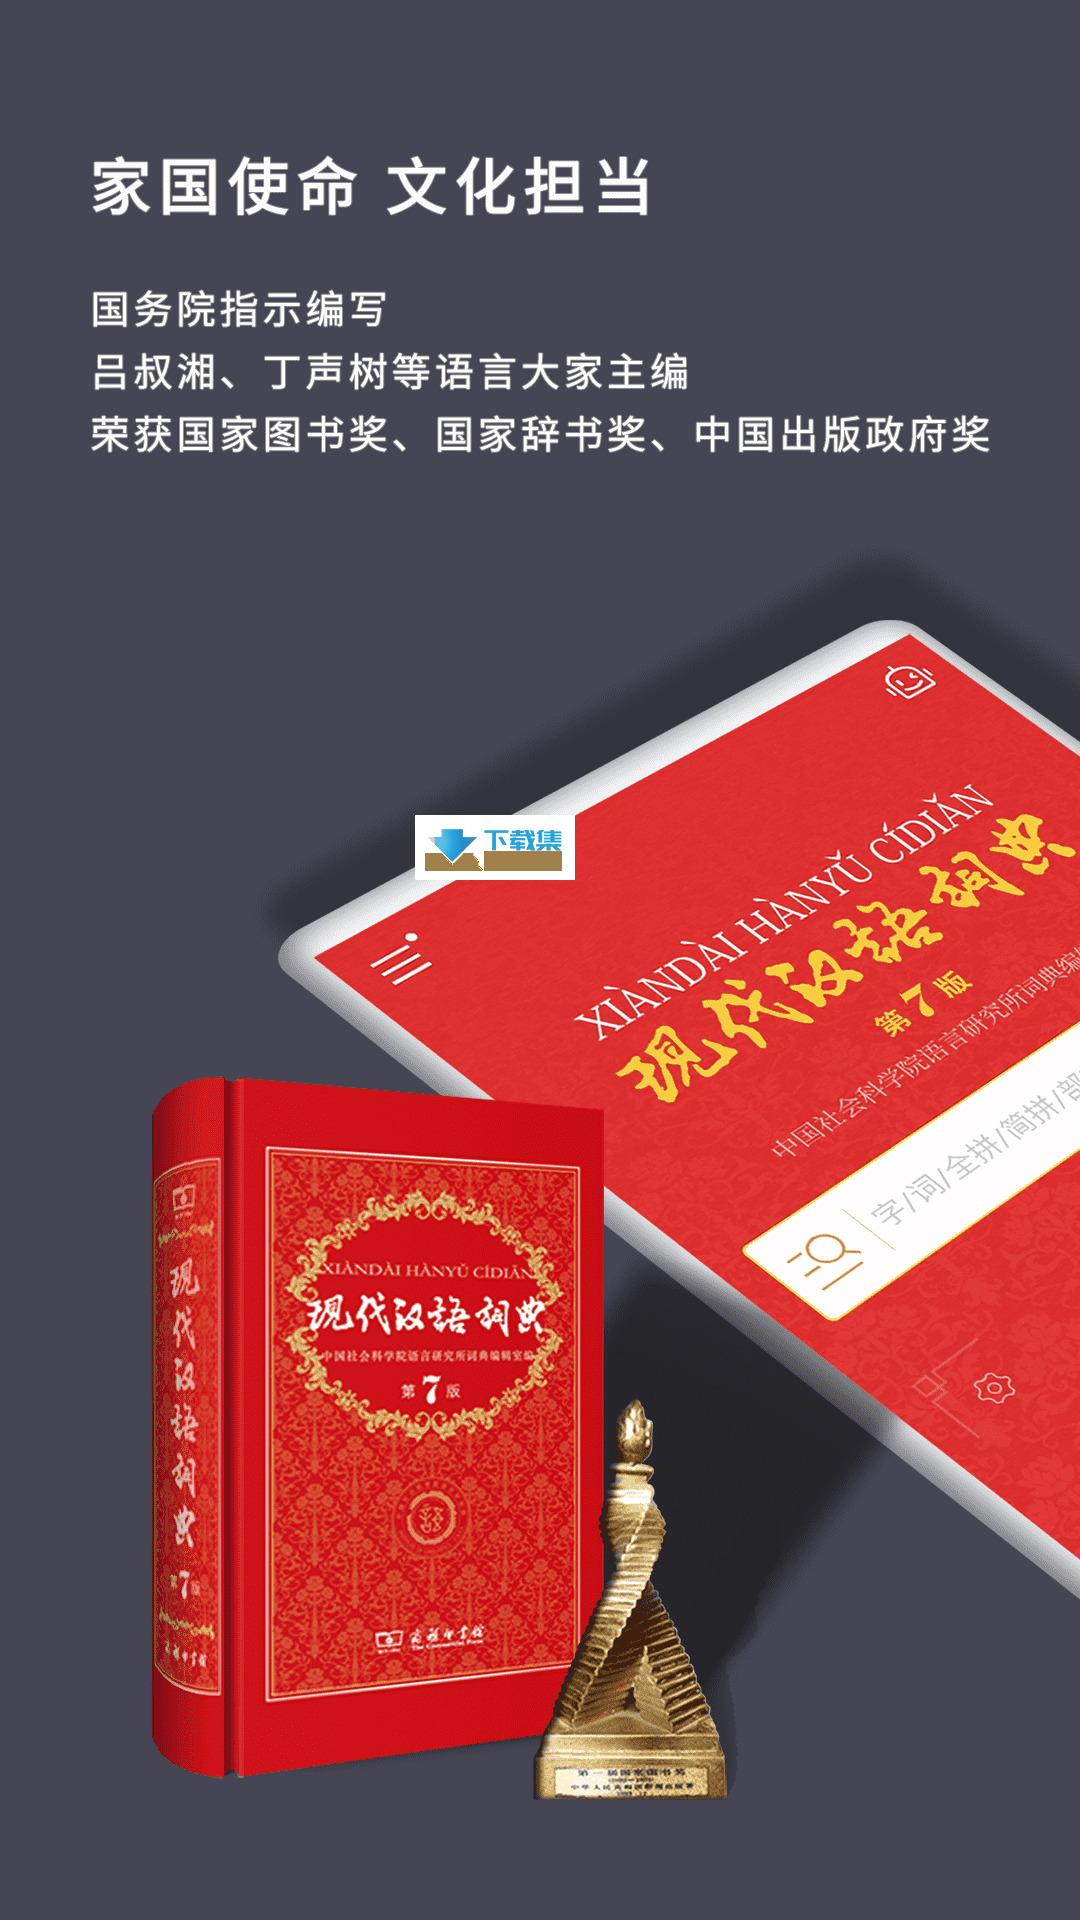 现代汉语词典界面